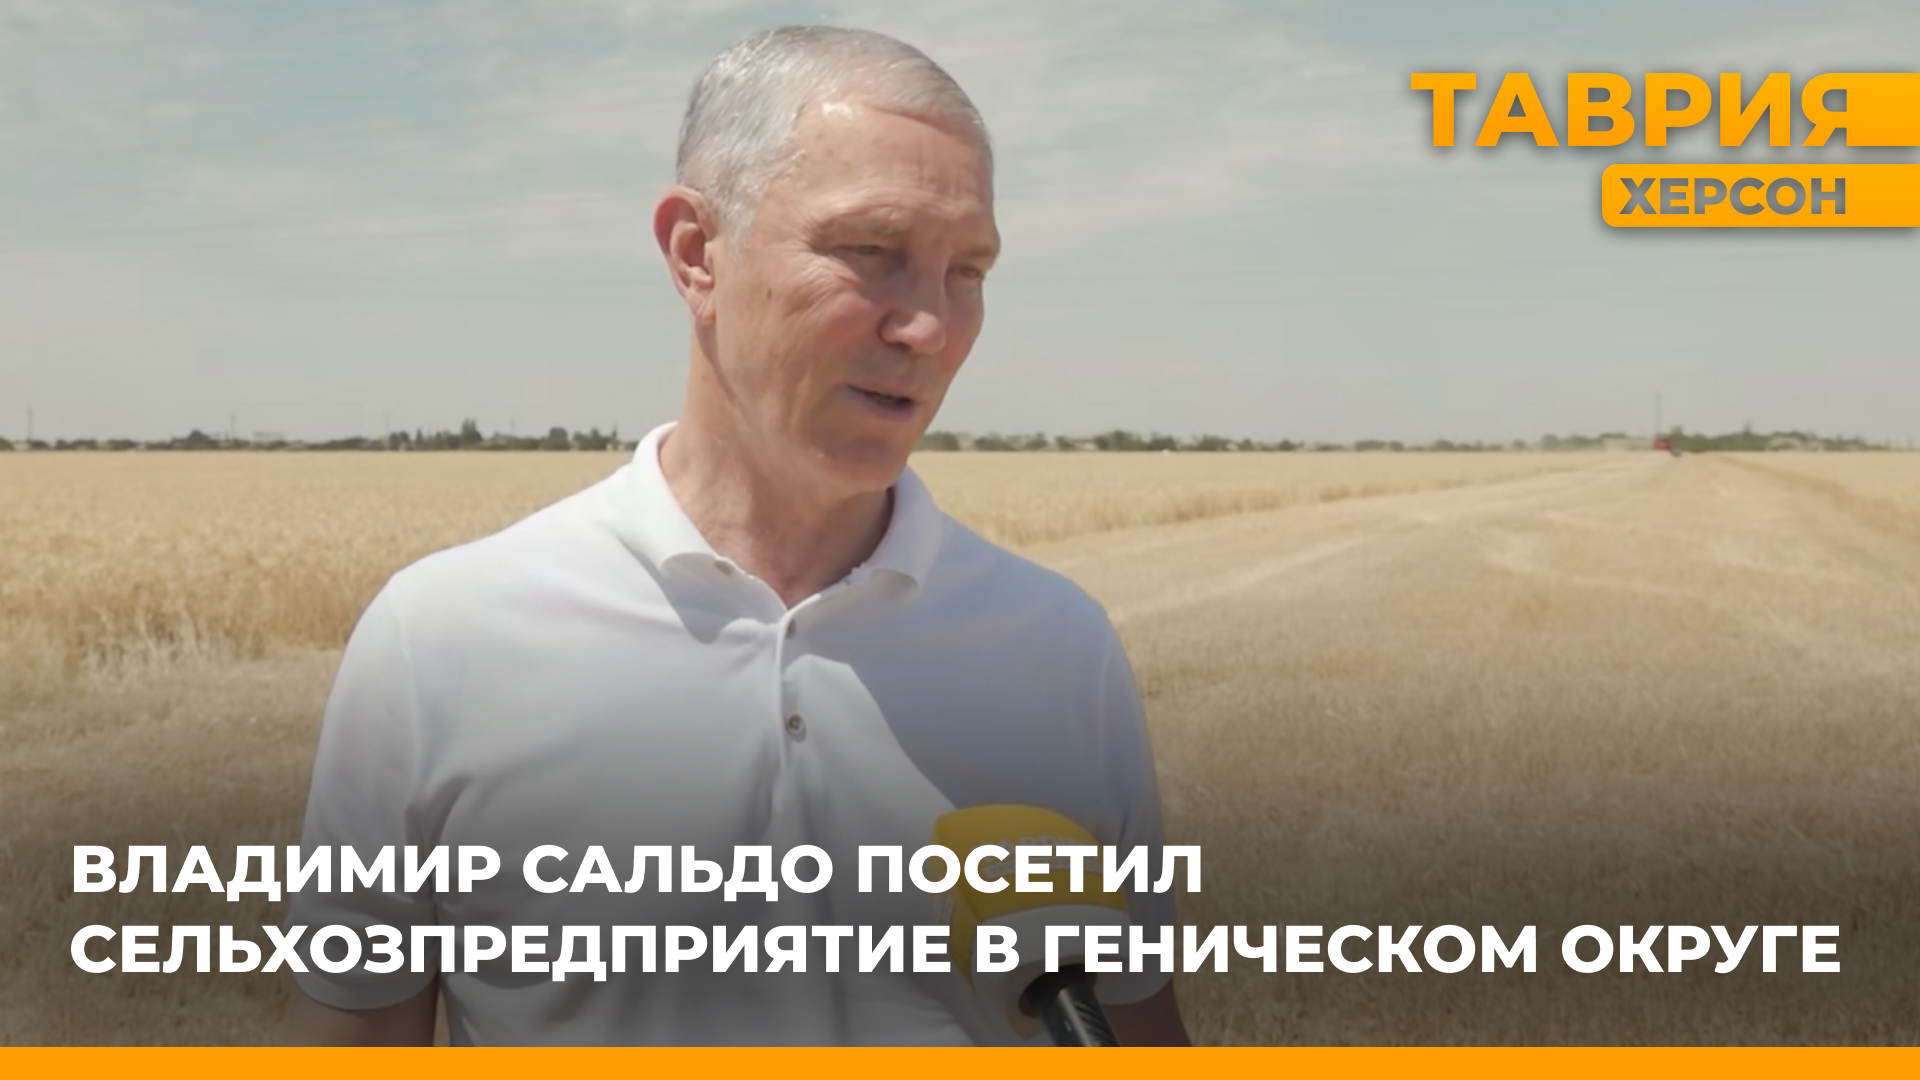 Владимир Сальдо посетил сельхозпредприятие в Геническом округе